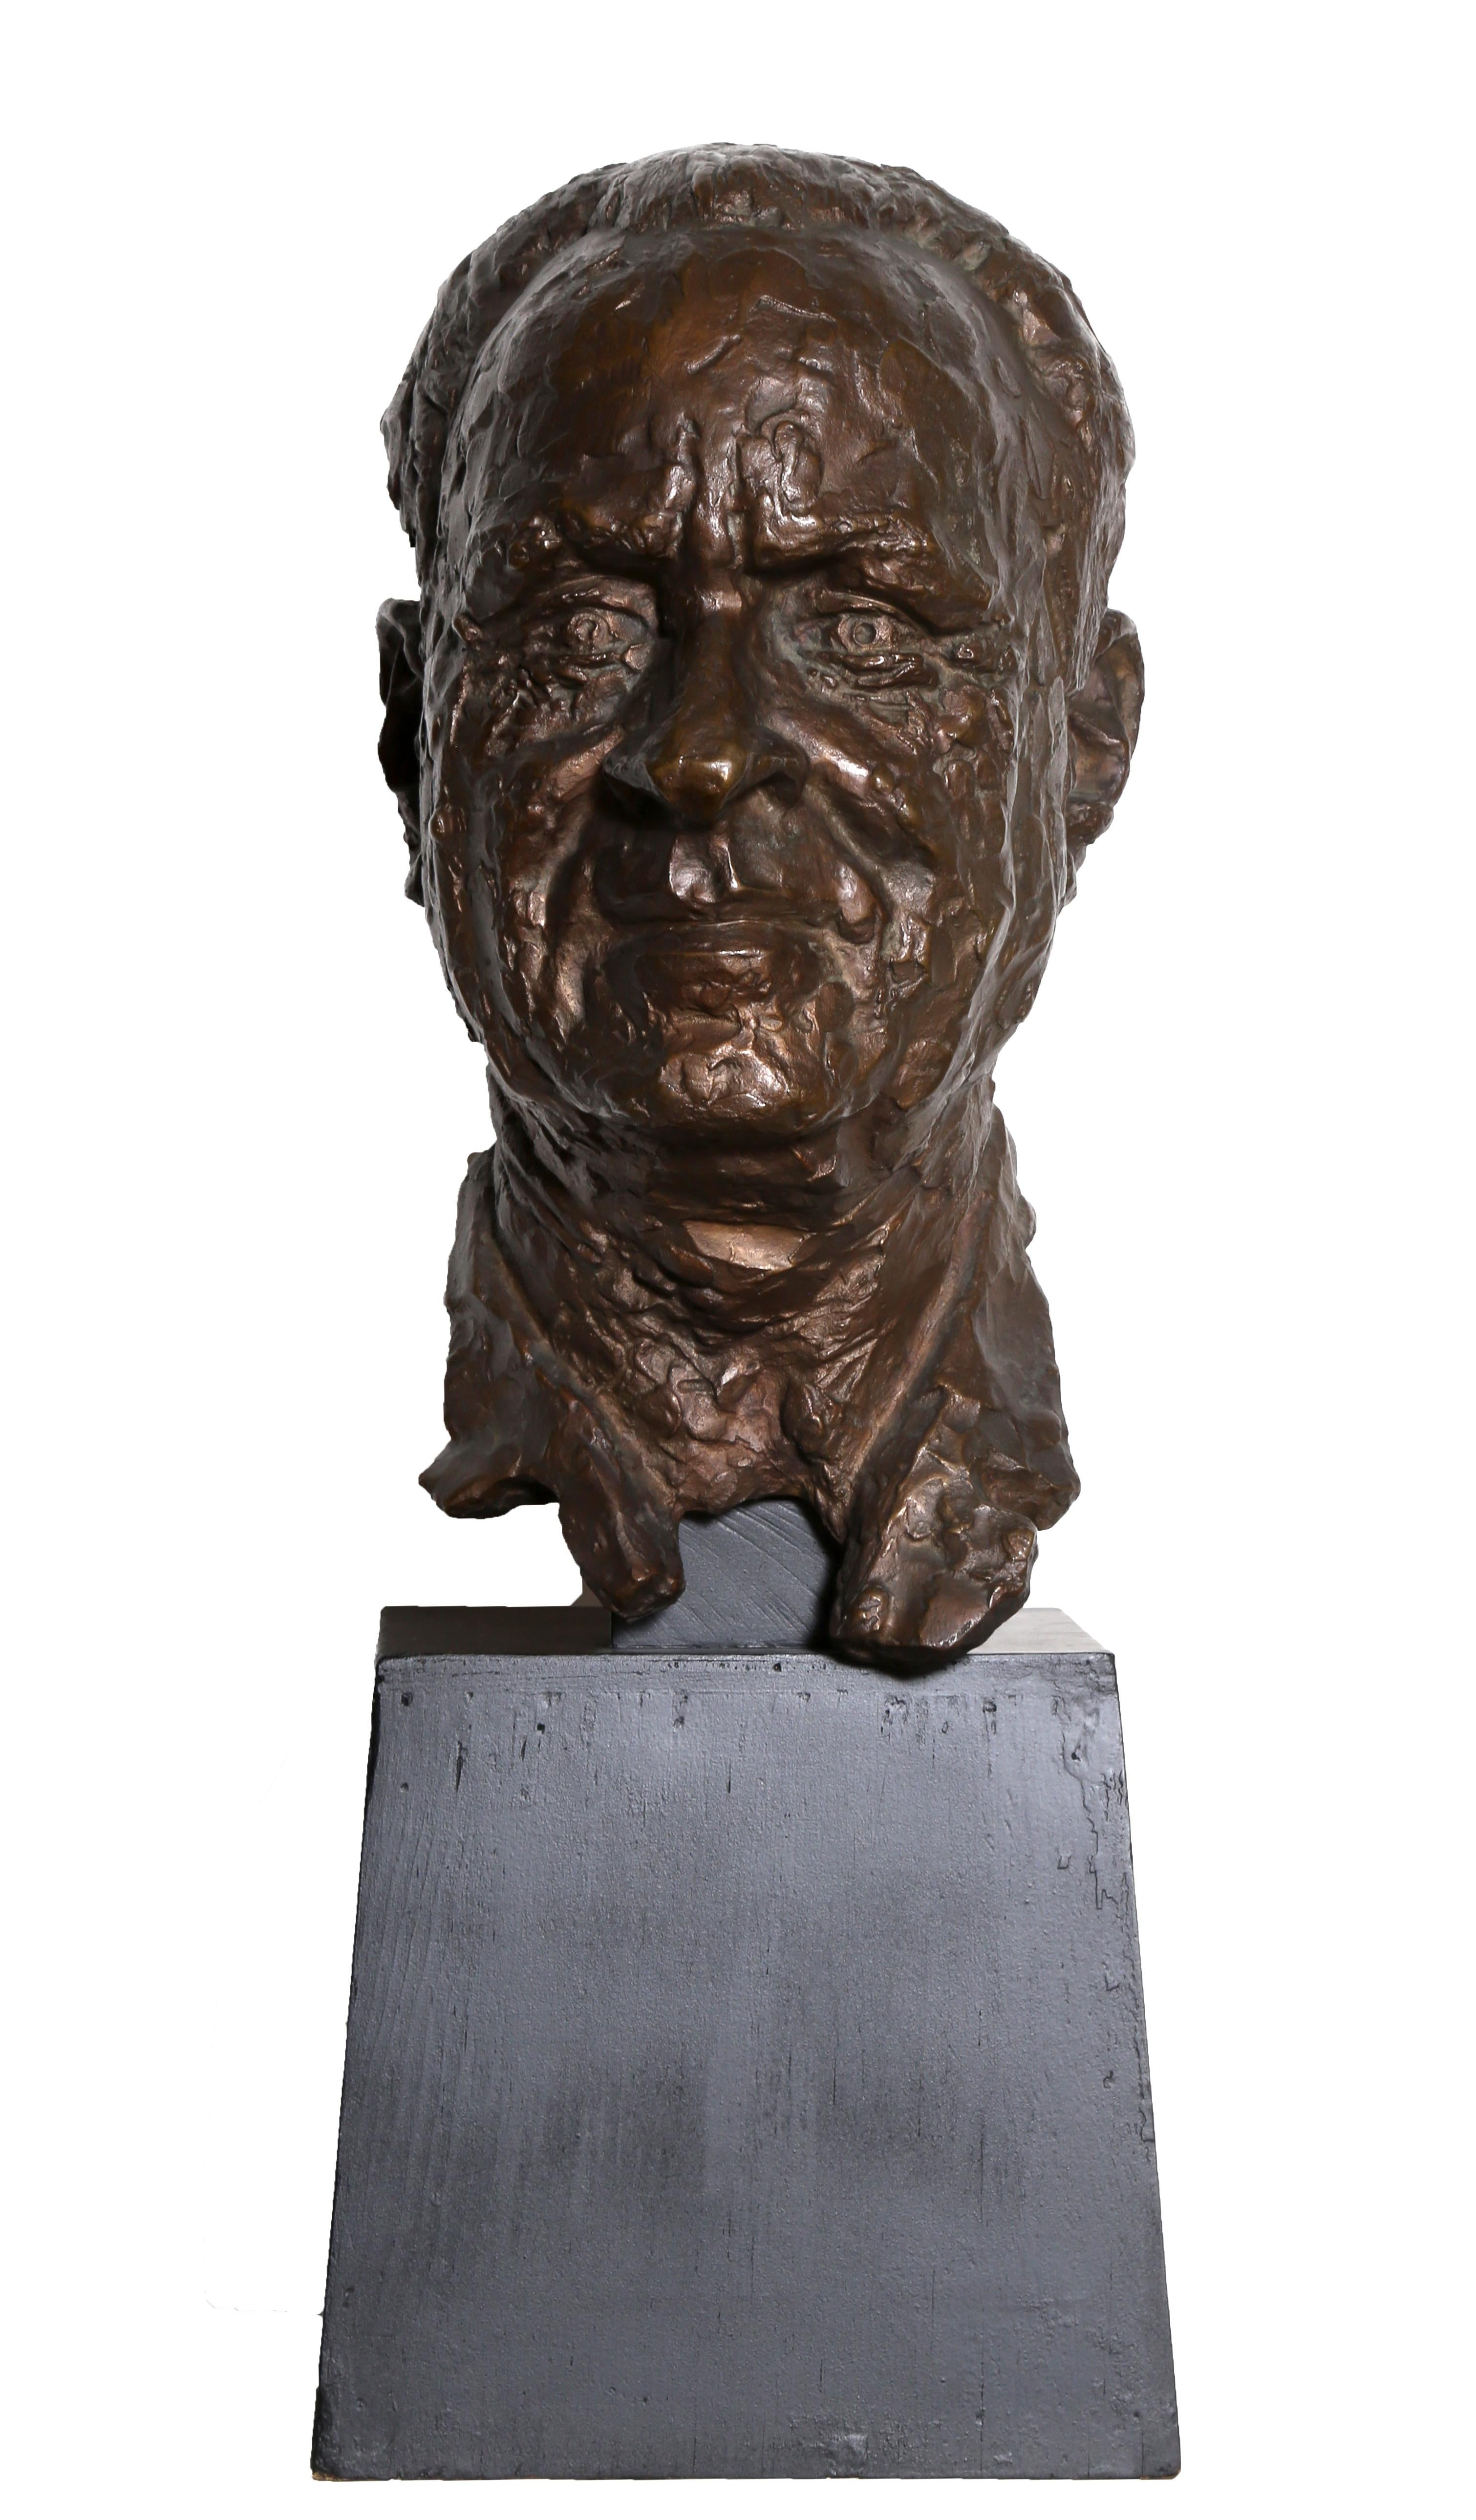 Bust of a Man, Bronze Sculpture by Chaim Gross